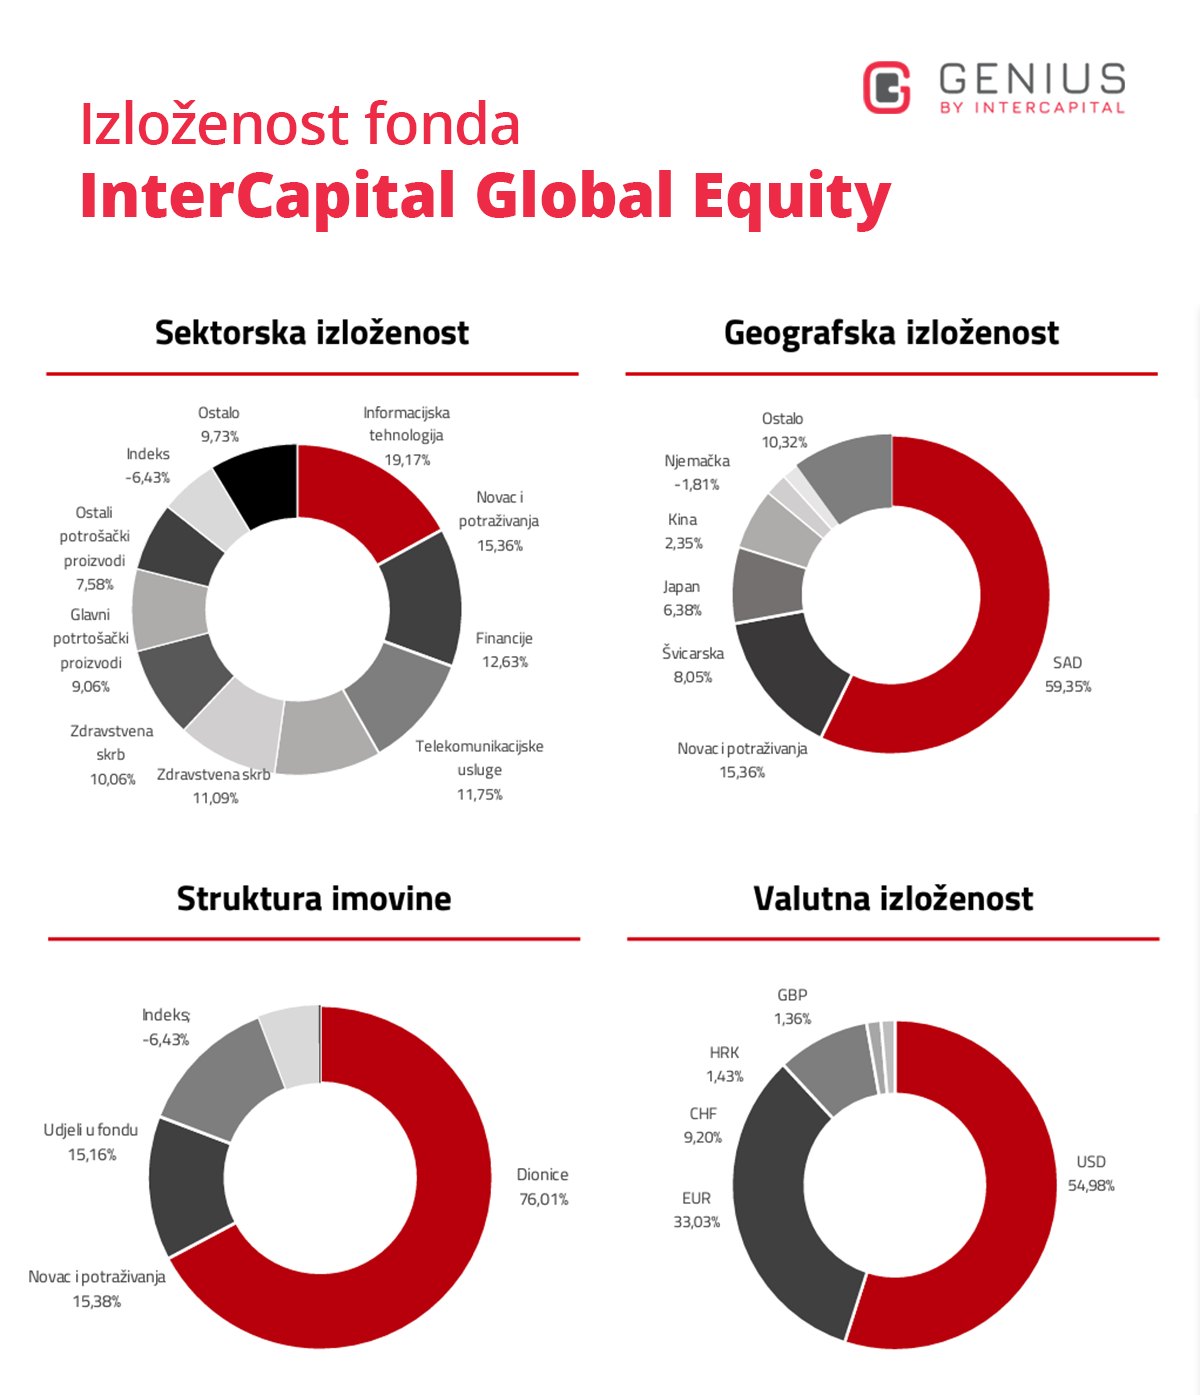 investicijski fondovi - prikaz izloženosti dioničkog fonda Intercapital Global Equity prema - sektorska, geografska, valutna izloženost i struktura imovine